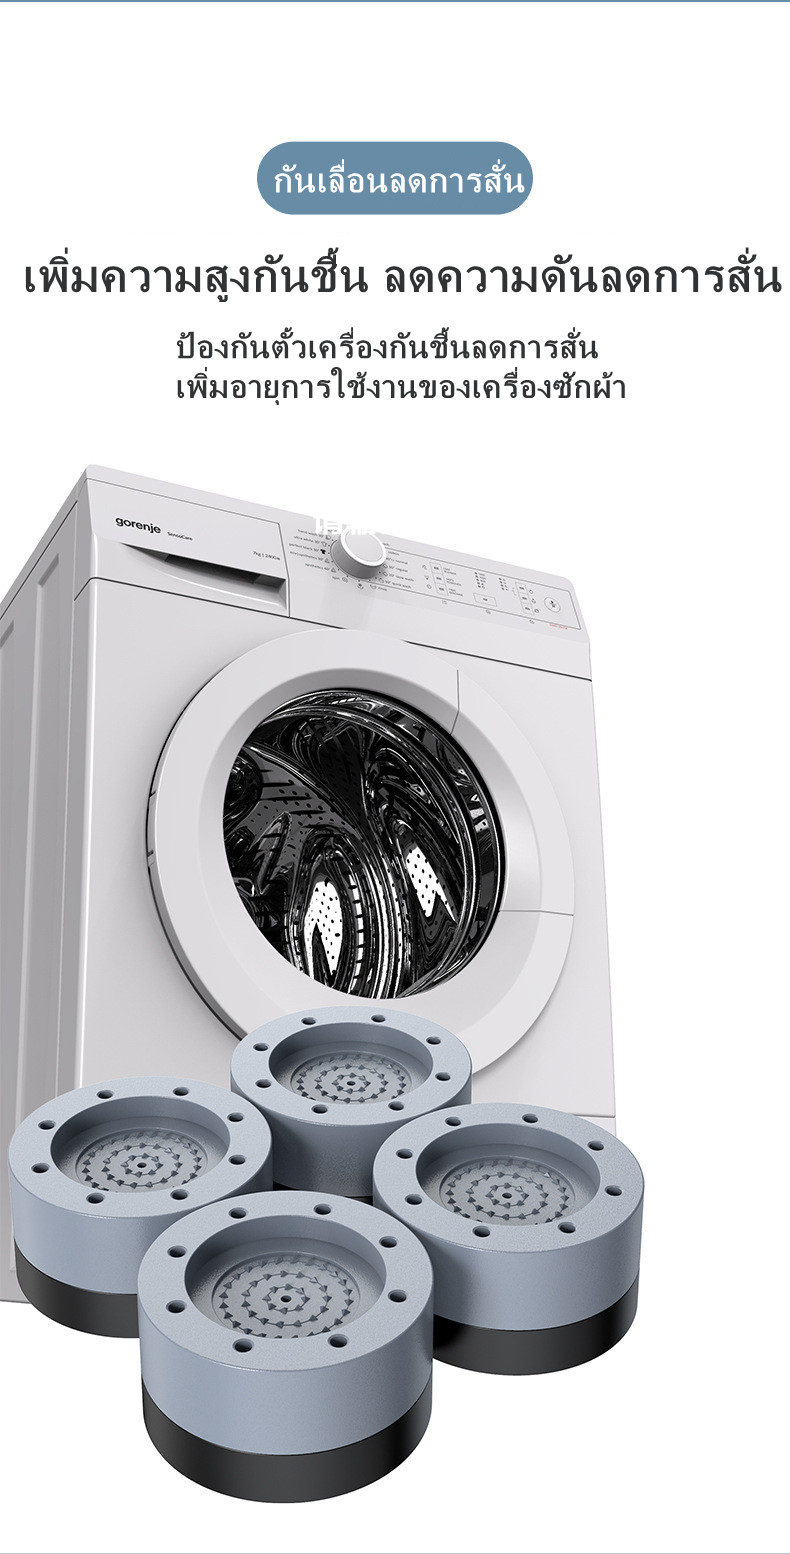 มุมมองเพิ่มเติมของสินค้า 4Pcs ขารองเครื่องซักผ้า ที่รองเครื่องซักผ้า ตู้เย็น โต๊ะ เพิ่มความสูง กันลื่น ลดเสียง แรงกระแทก ขารองถังซักผ้า ฐานรองเครื่องซักผ้า